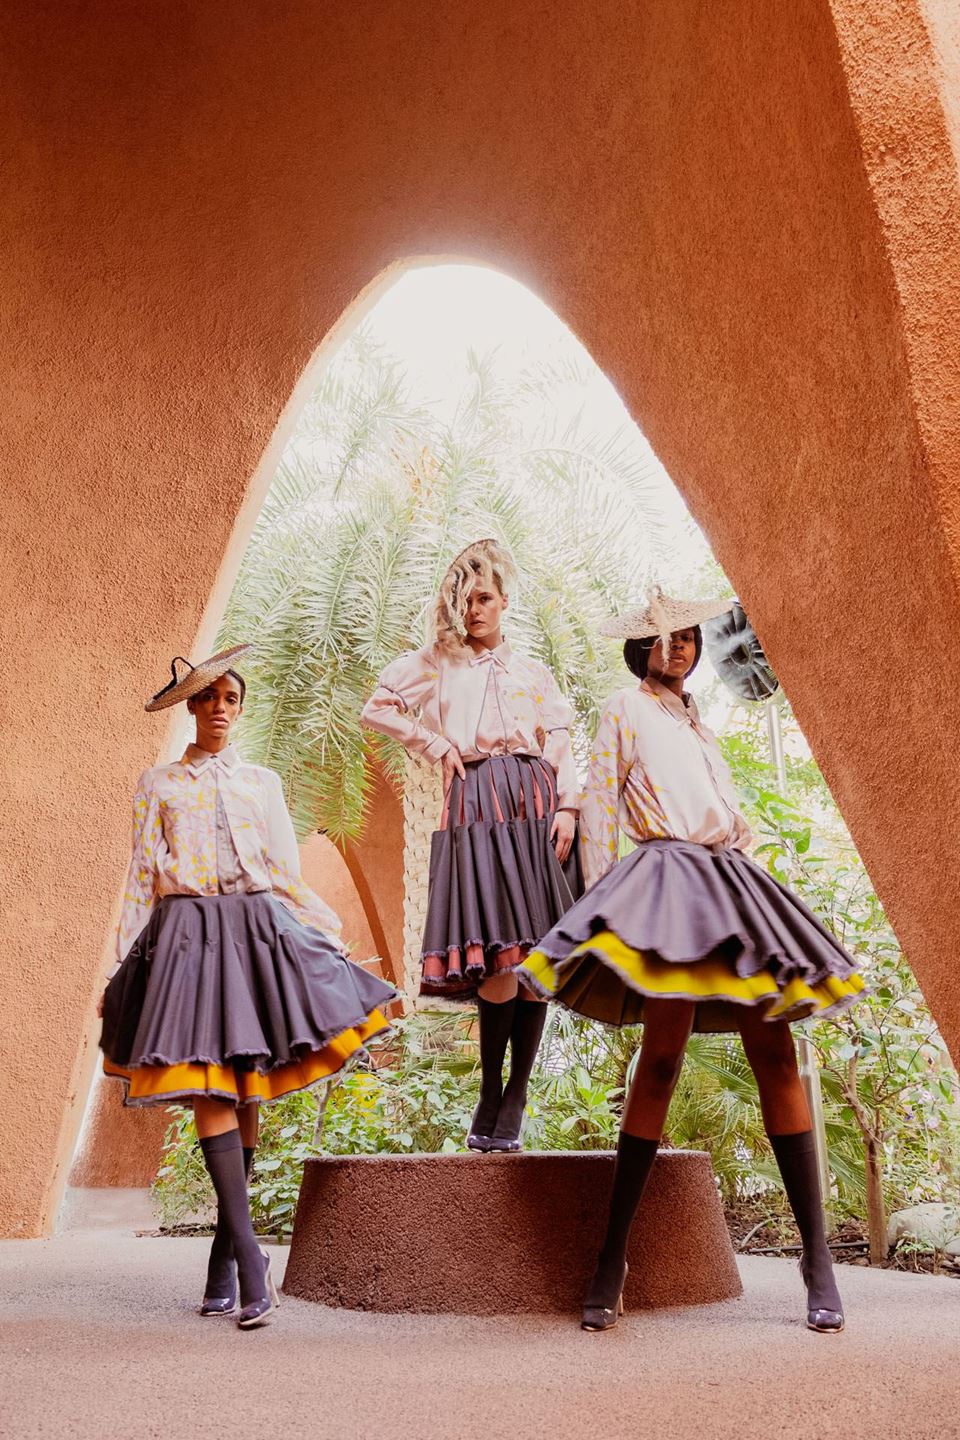 الجناح النمساوي يربط الثقافات من خلال الموضة في إكسبو 2020 دبي